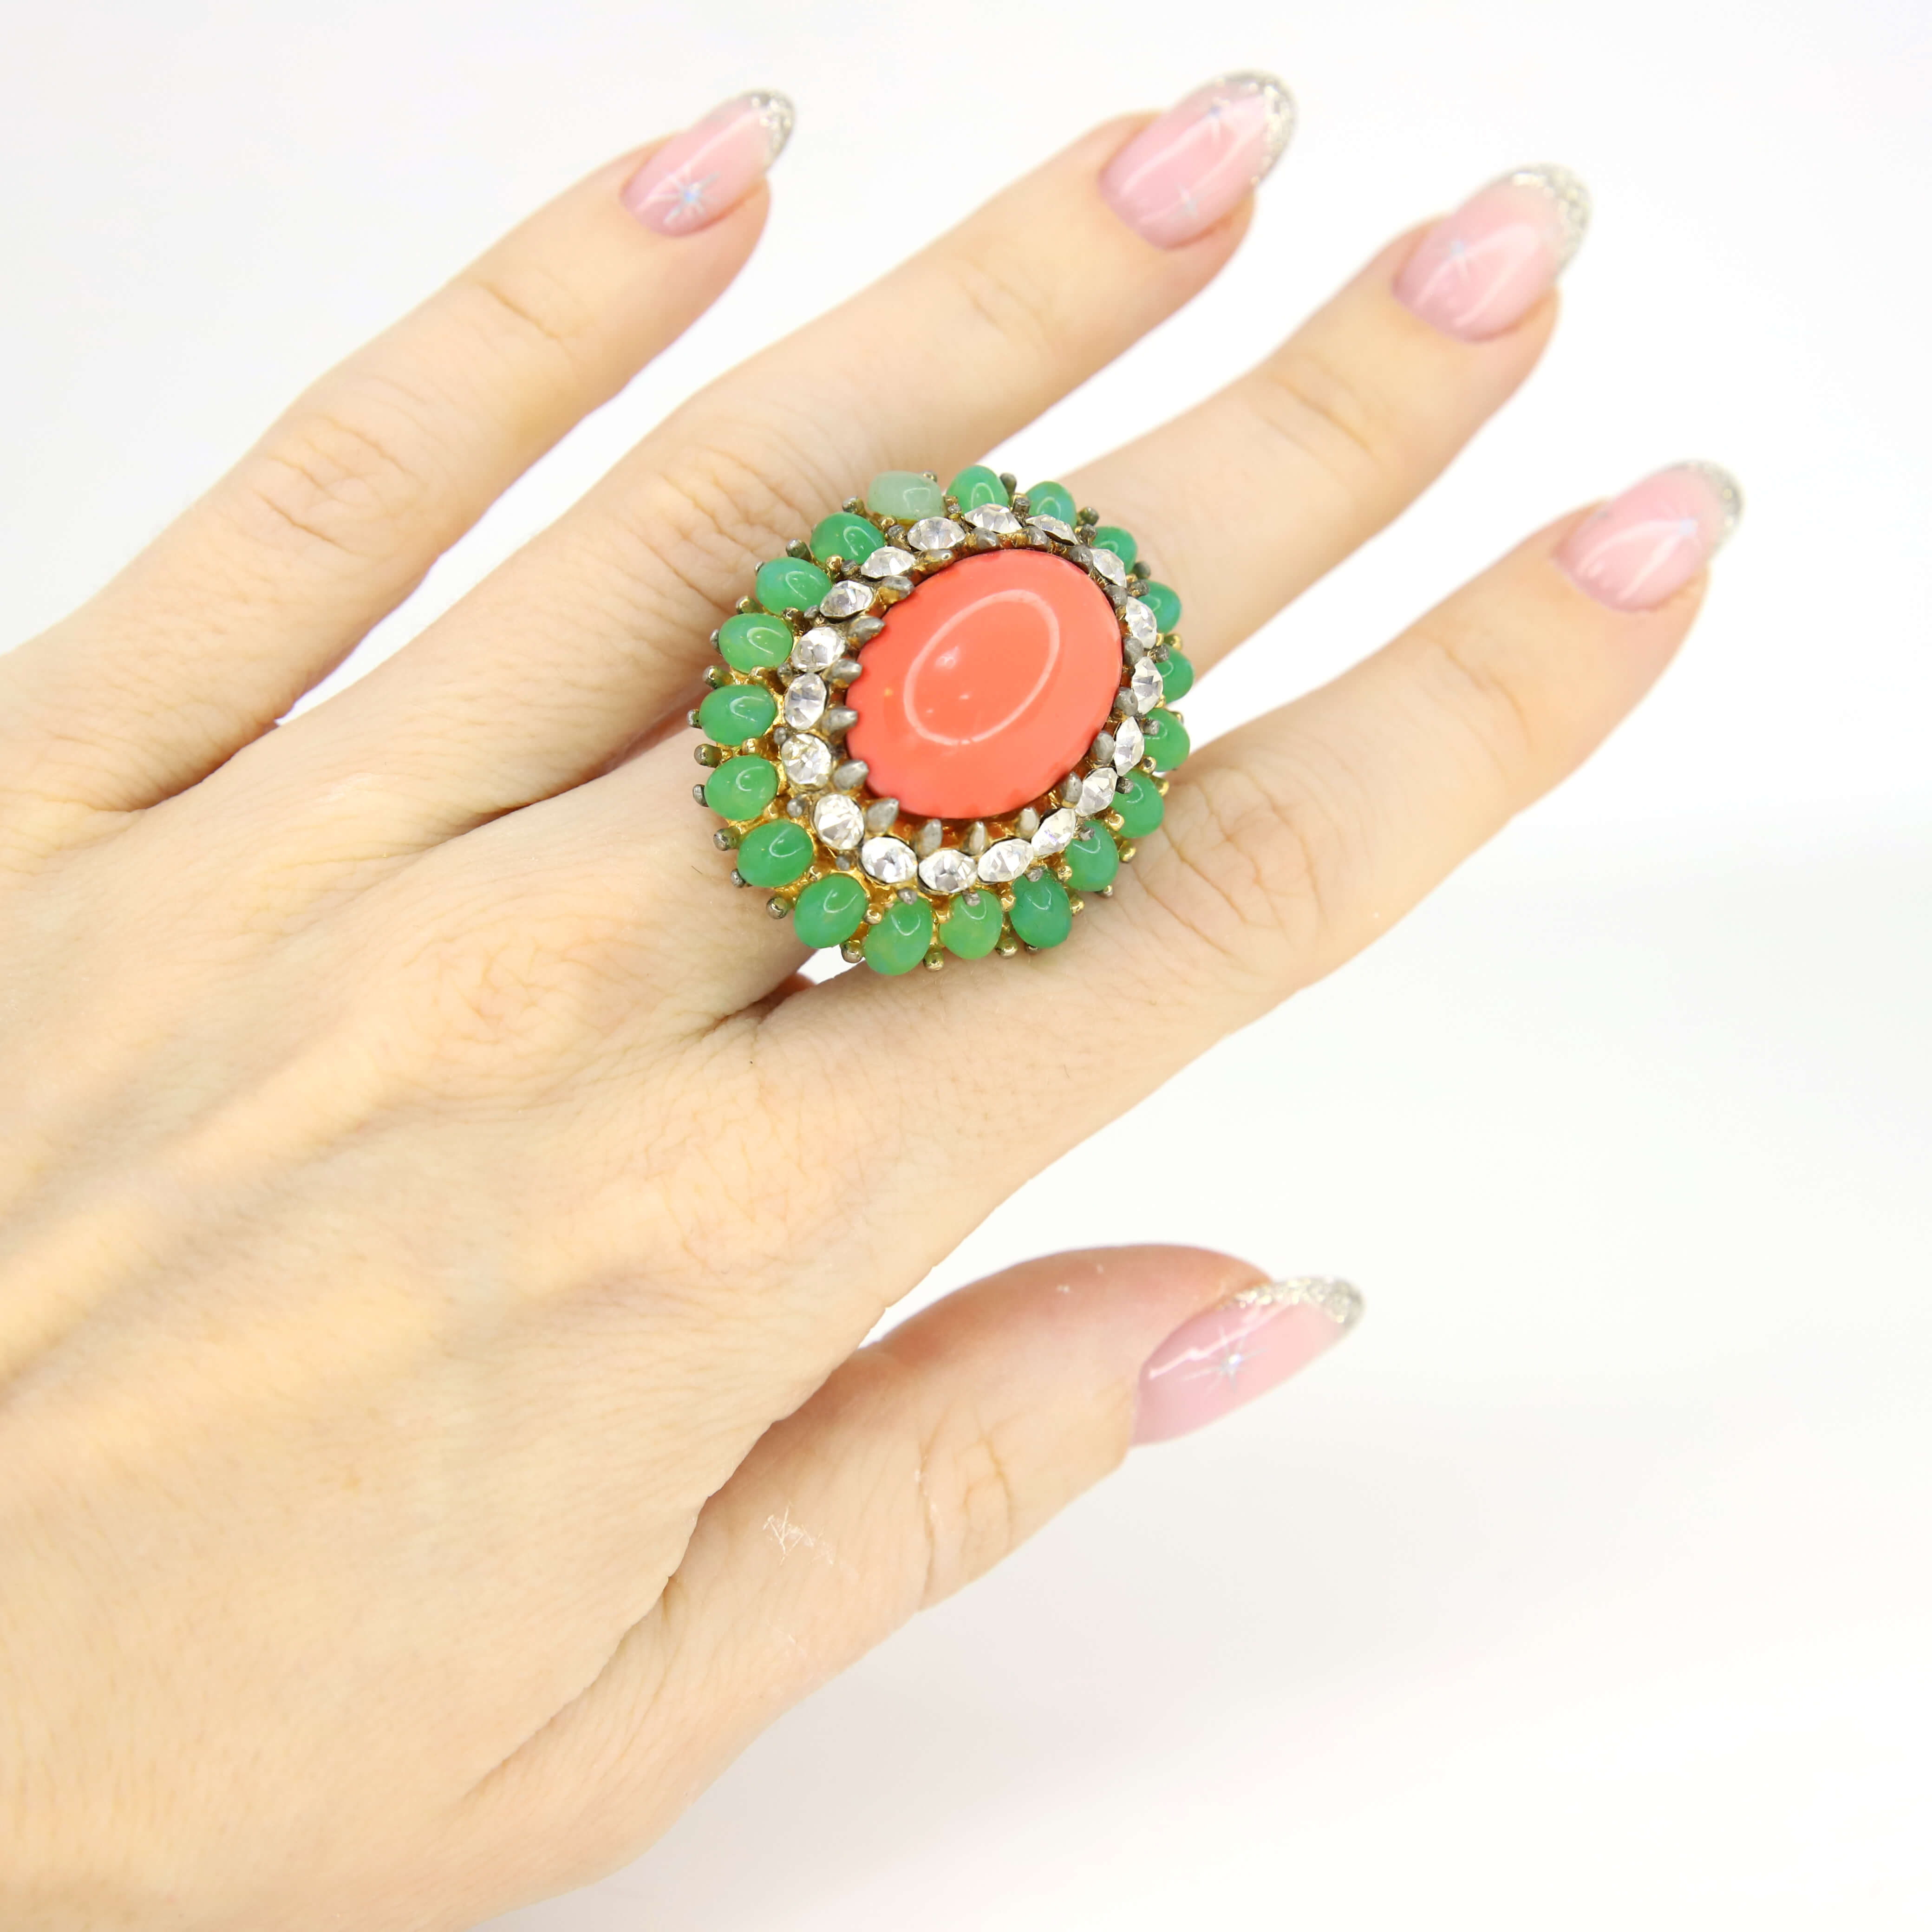 Винтажное кольцо Jomaz размер 15,5-17,5, цвет Зеленый, фото 1